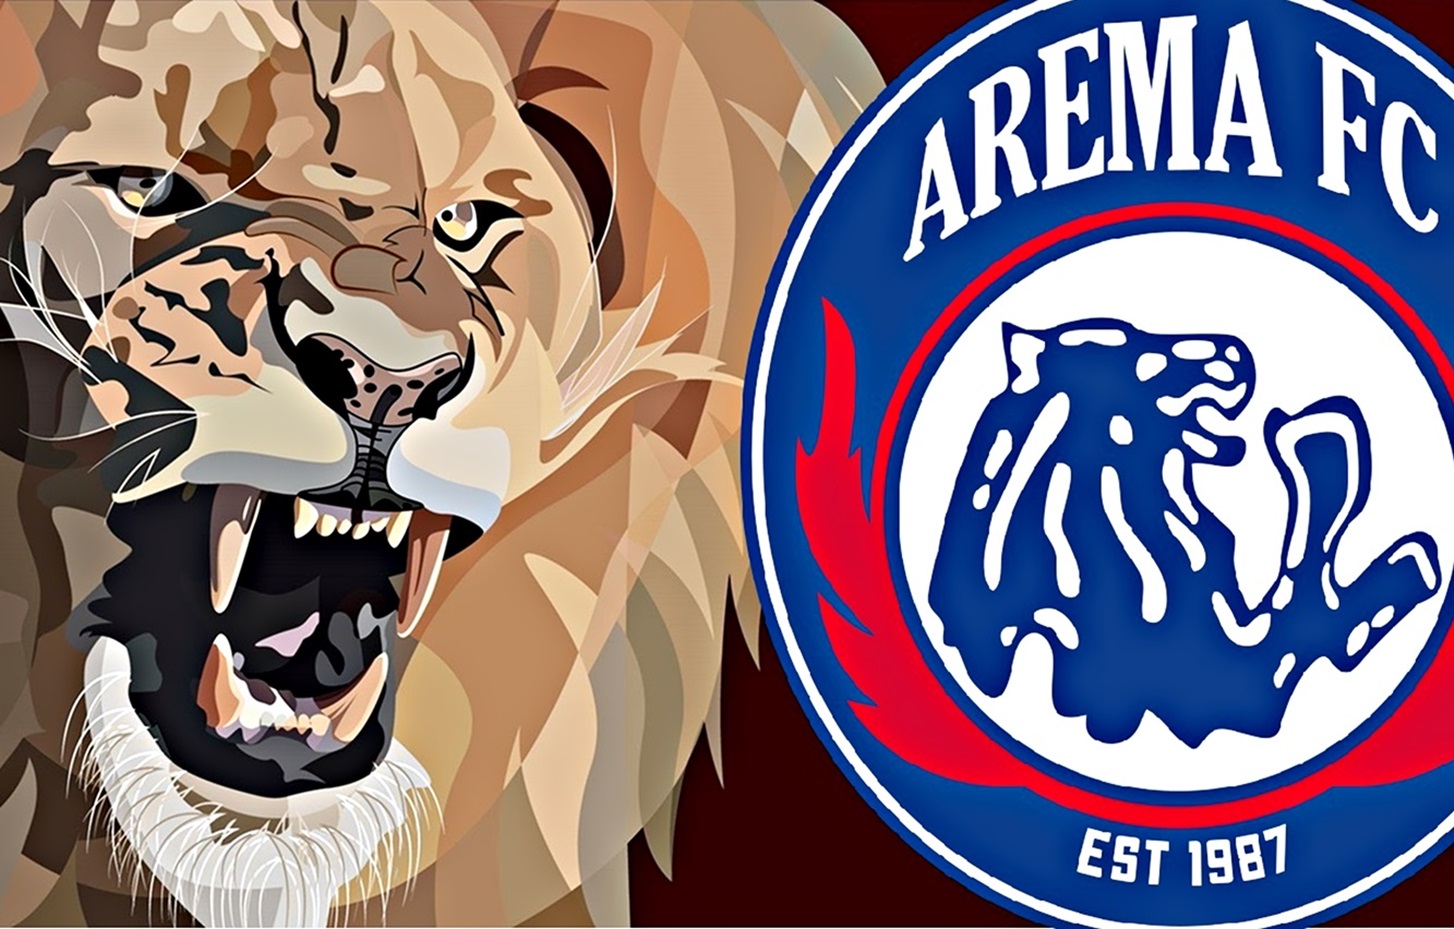 Arema FC Gelar Launching Tim dan Jersey untuk Liga 1 2022-2023 Selama 10 Jam